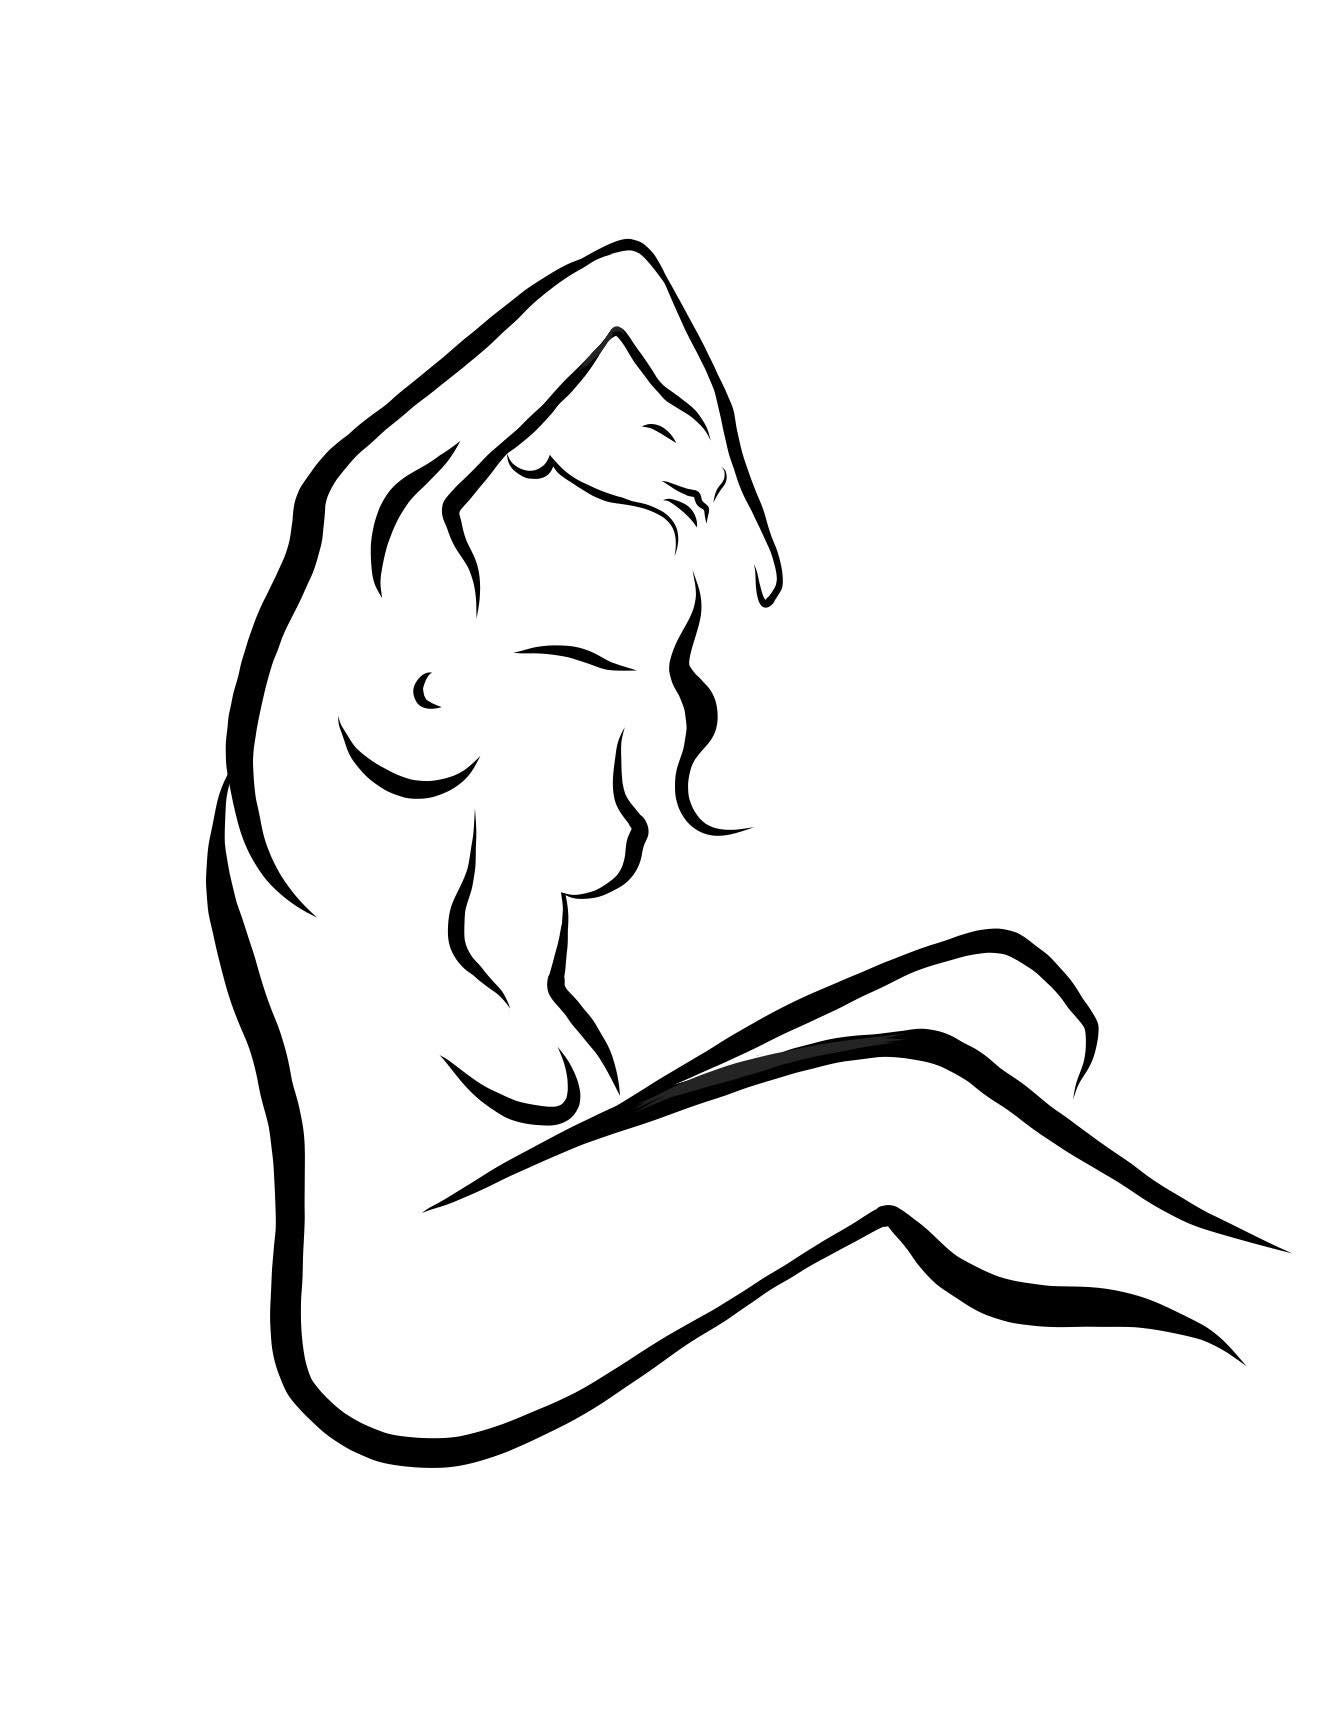 Michael Binkley Nude Print - Haiku #18 - Digital Vector Drawing Seated Female Nude Woman Figure Arm Raised